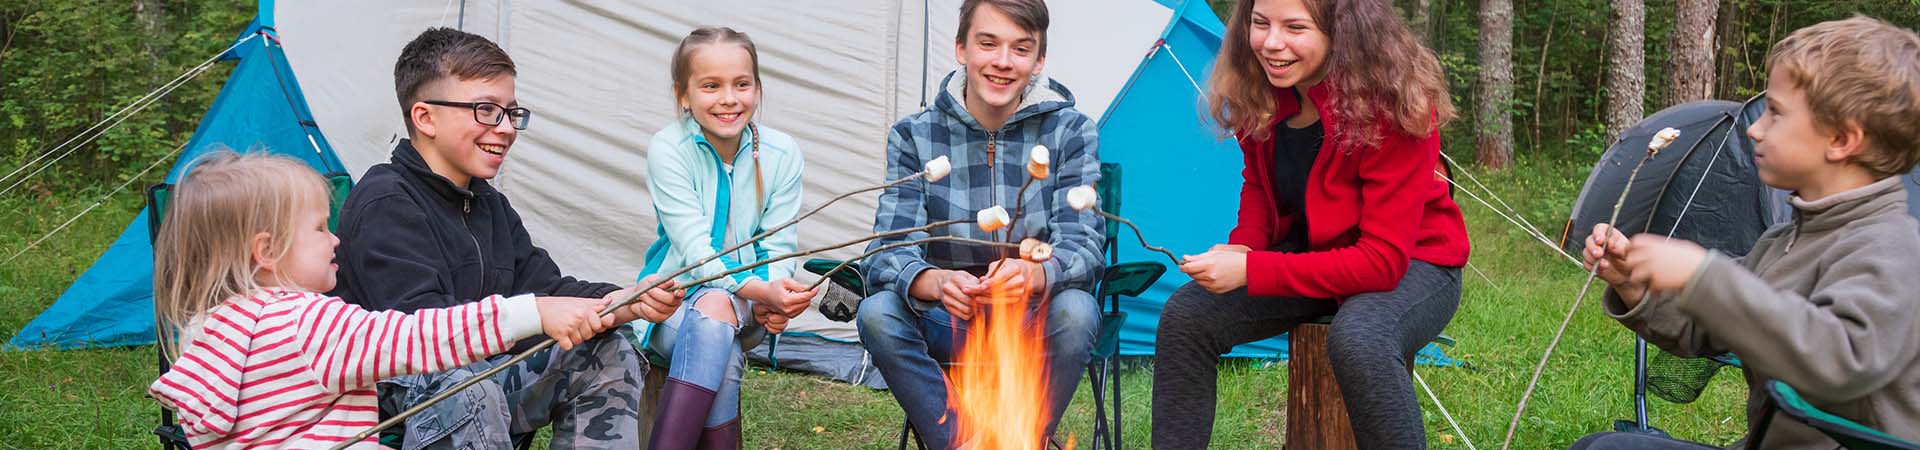 Ferienlager – Kinder grillen Marshmallows über einem Lagerfeuer.